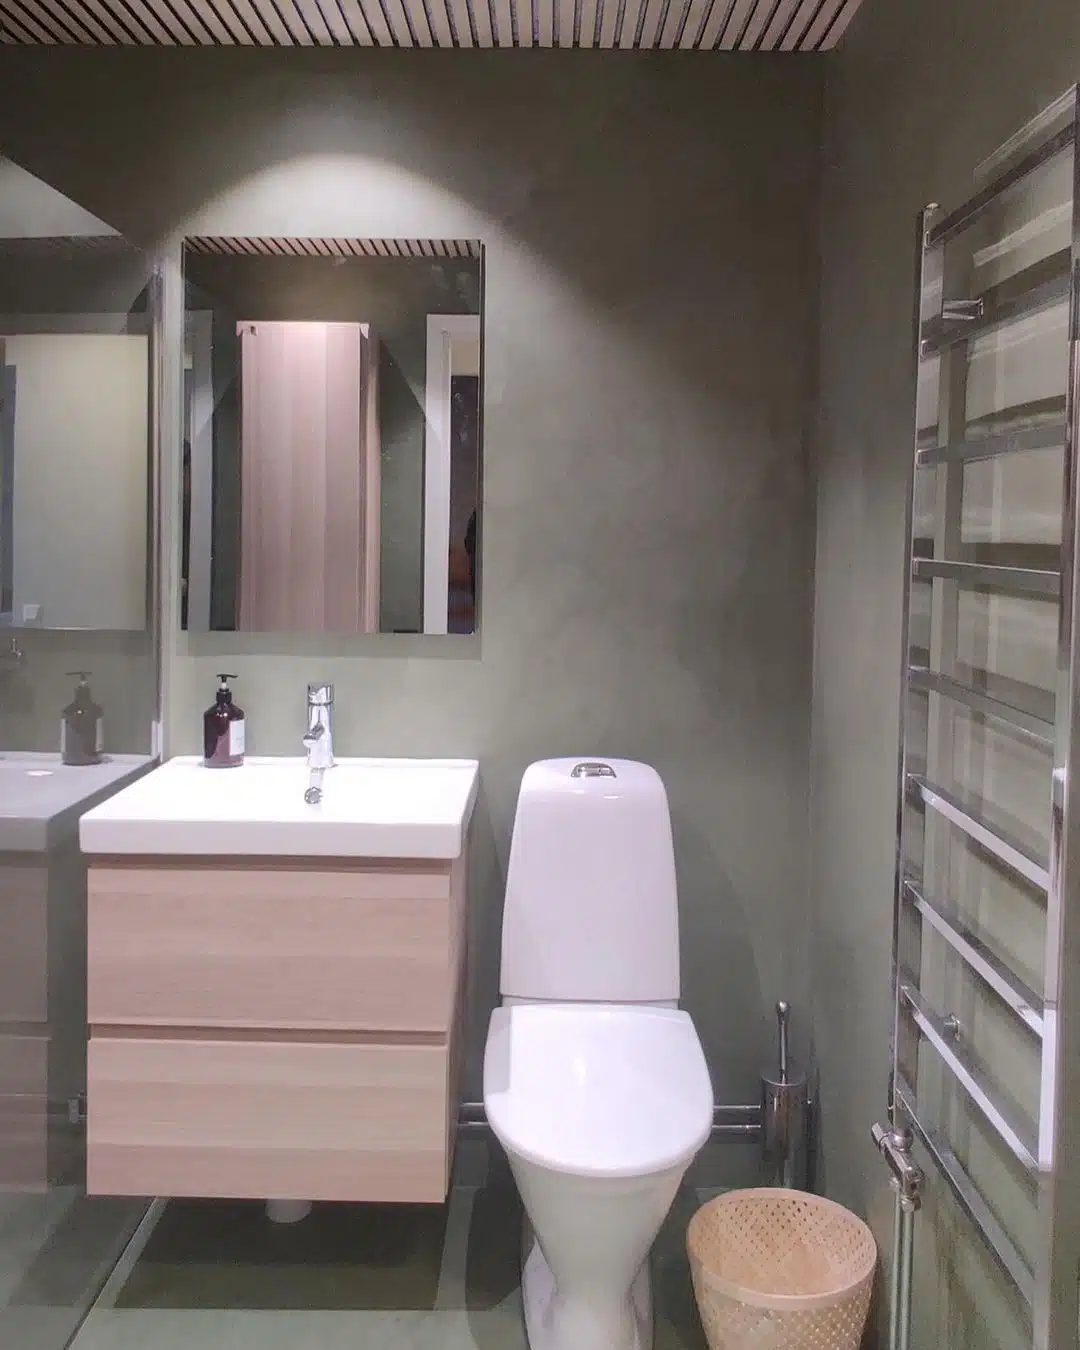 Ett badrum som har renoverats med Microcement i eskilstuna